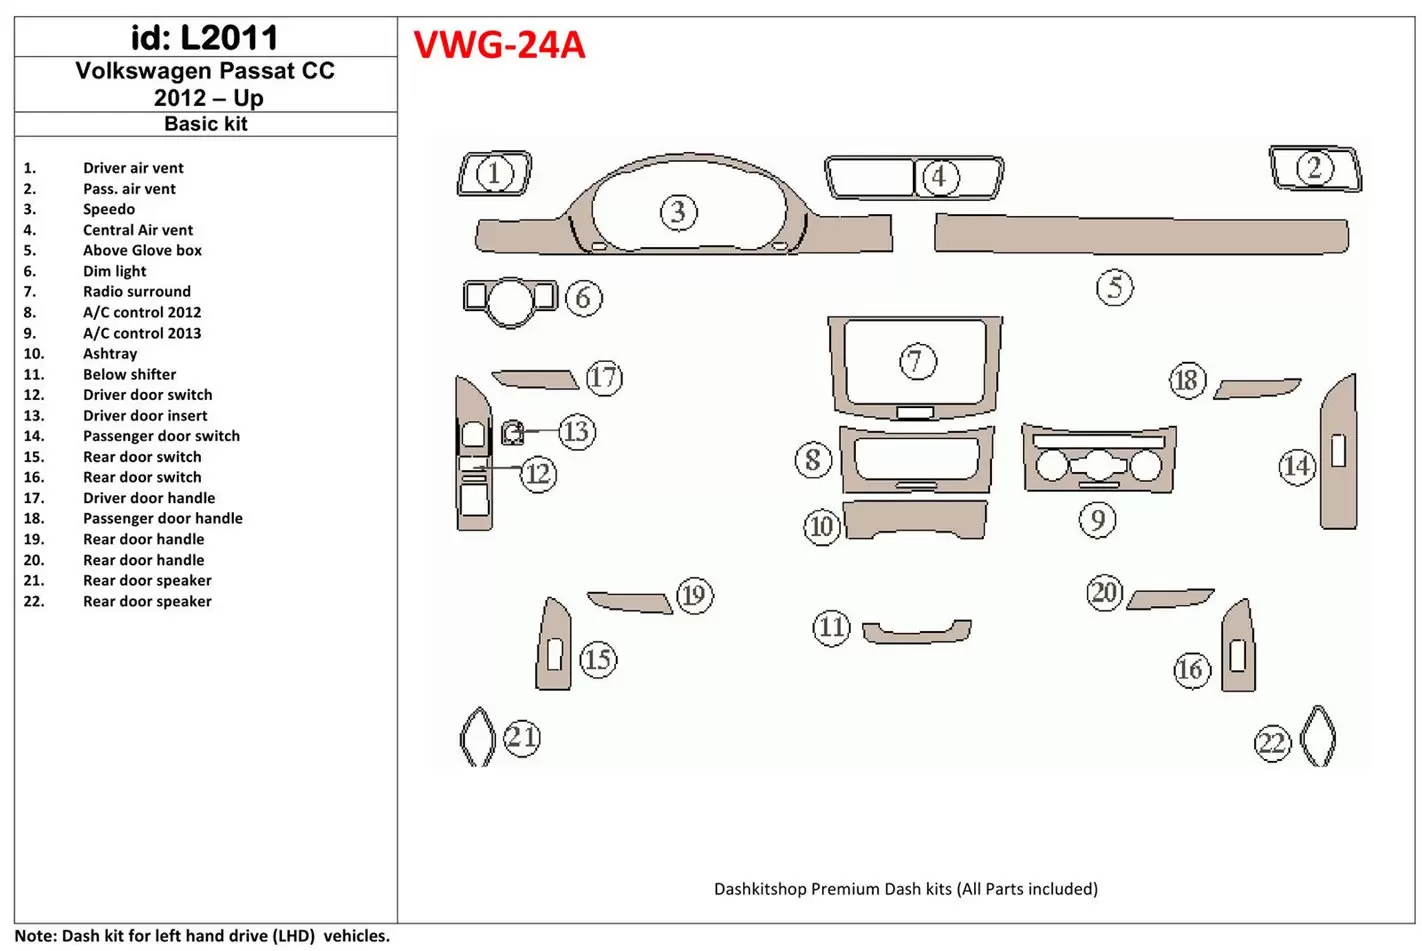 Volkswagen Passat CC 2012-UP Paquet de base BD Kit la décoration du tableau de bord - 1 - habillage decor de tableau de bord